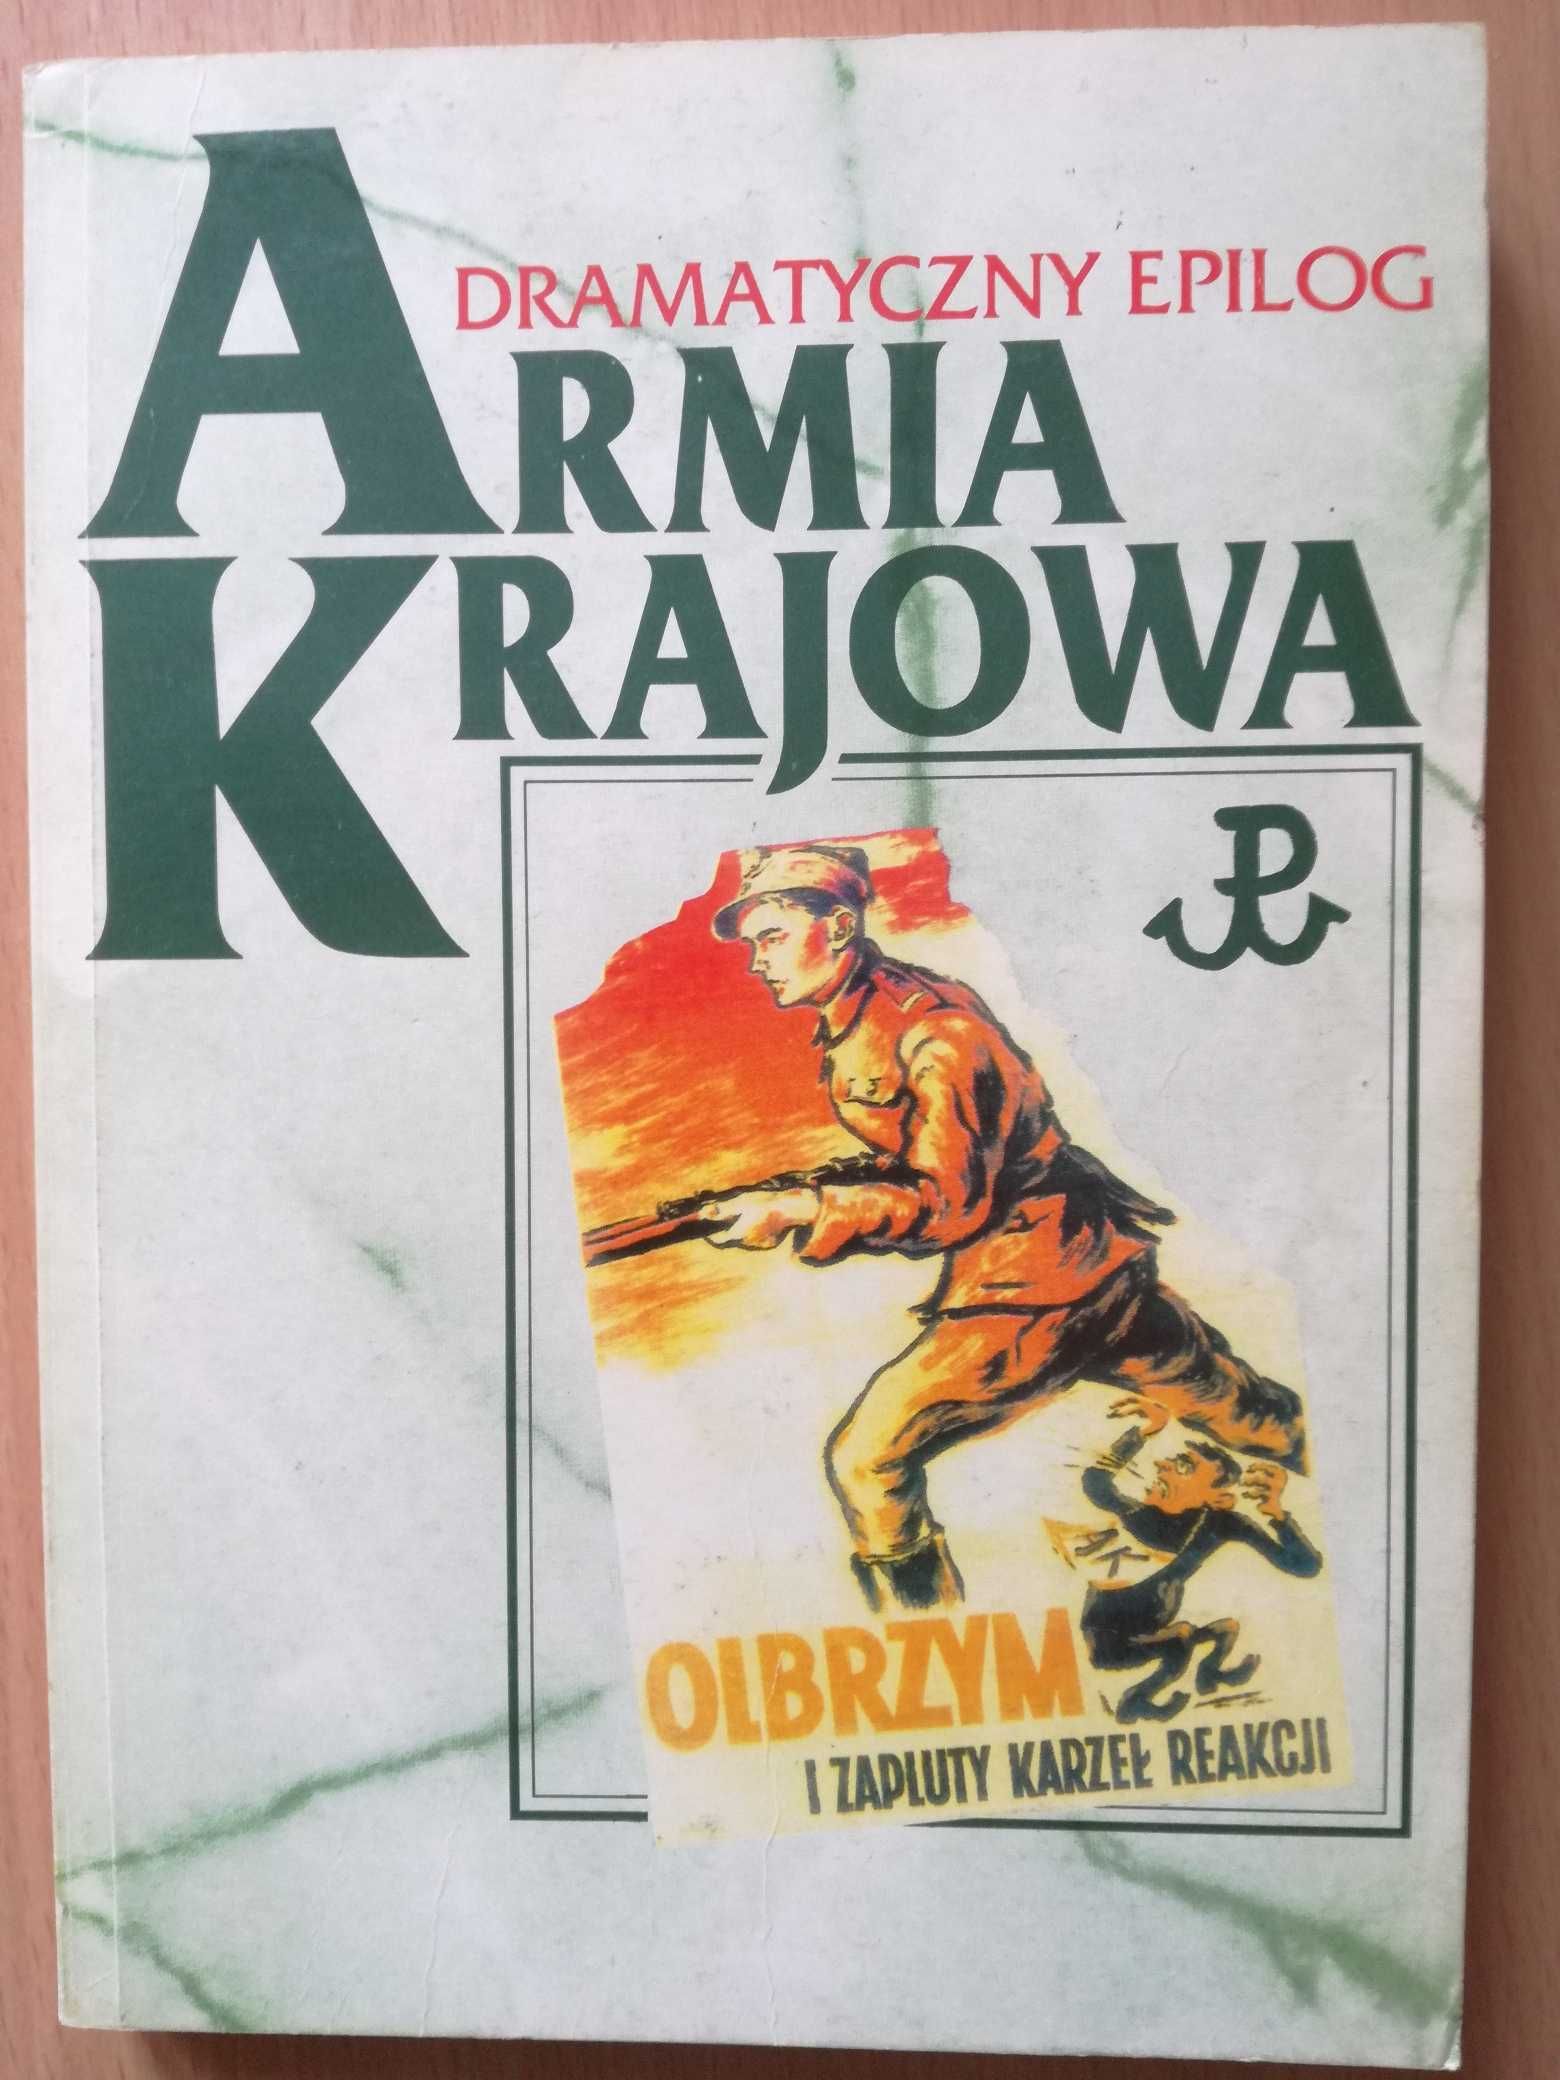 Armia Krajowa, dramatyczny epilog. red. K. Komorowski